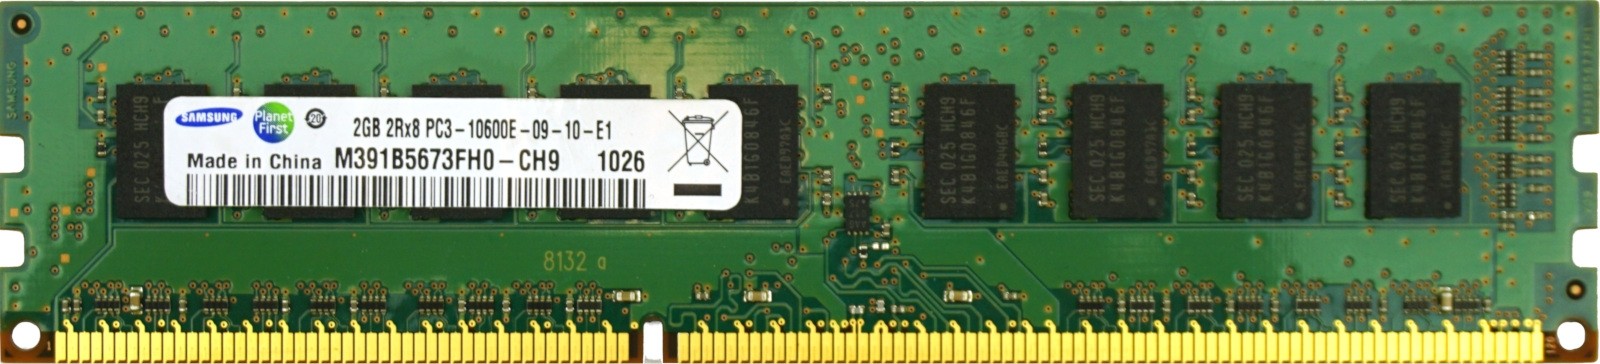 Samsung - 2GB PC3-10600E (DDR3-1333Mhz, 2RX8)